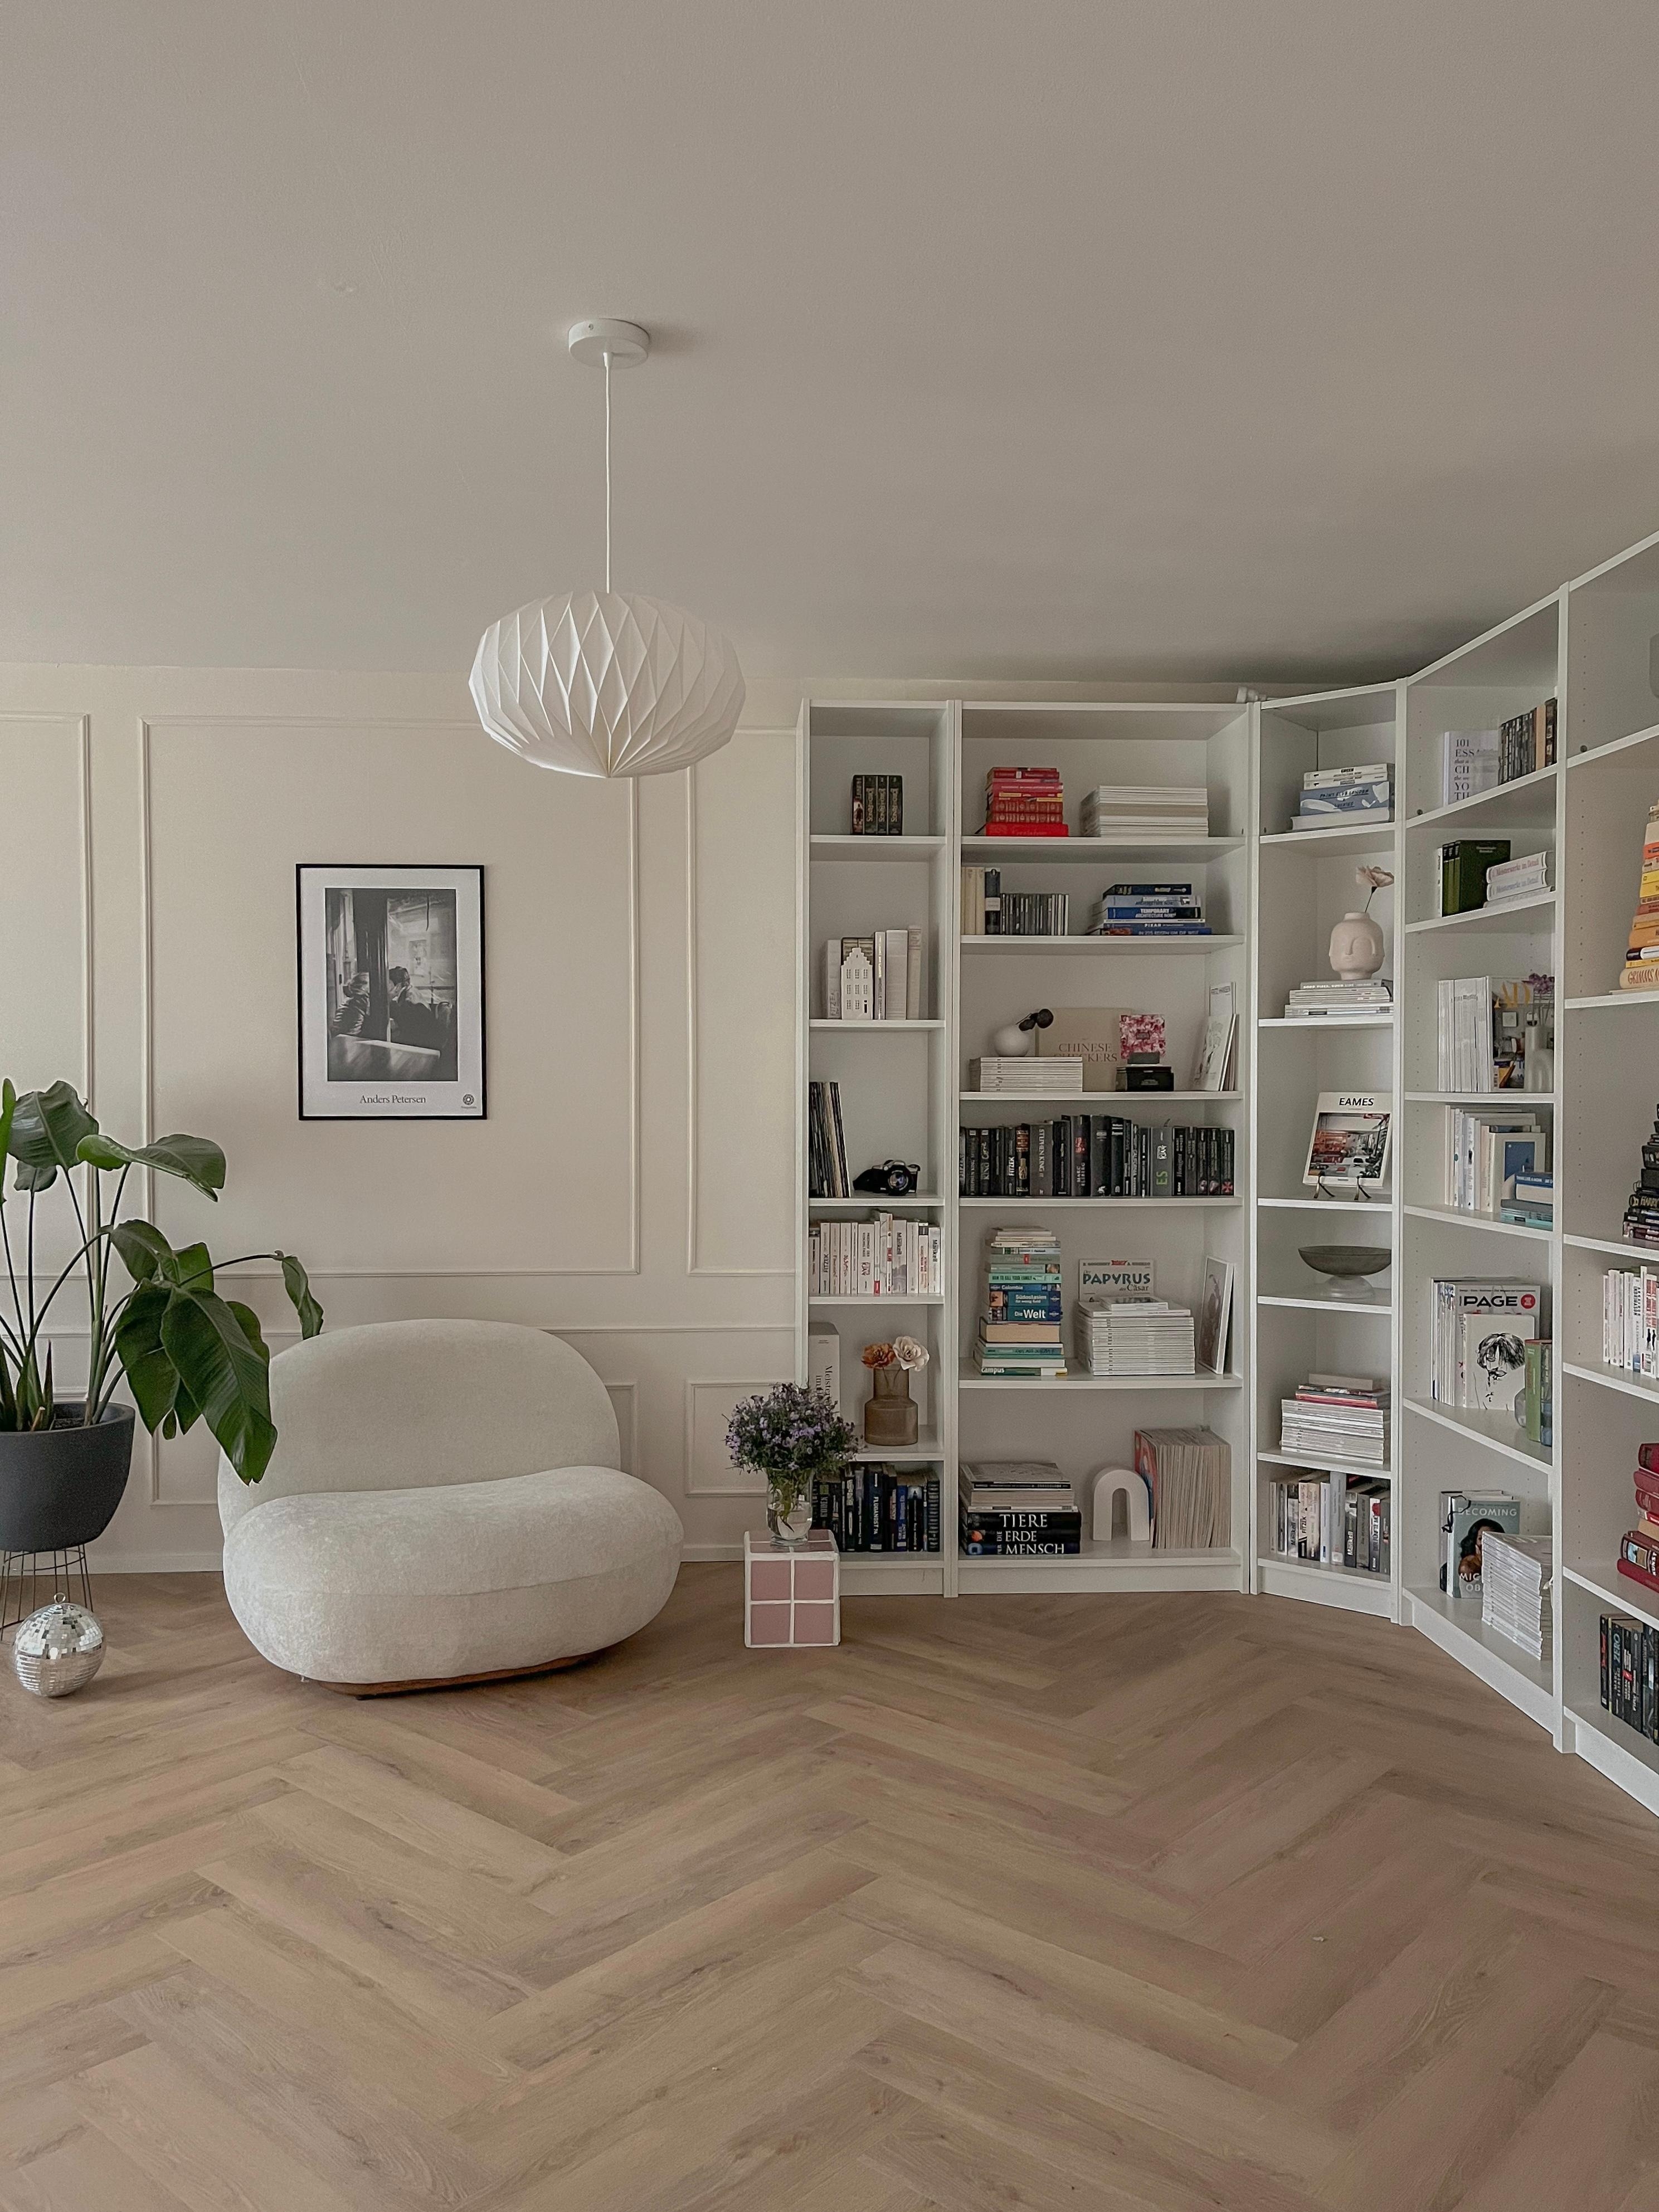 Unser #wohnzimmer mit der #ikea #billy #leseecke und unserem kleinen #diy #beistelltisch 
#fischgrätvinyl #bücher #bücherwand #regale #bücherregal #sessel